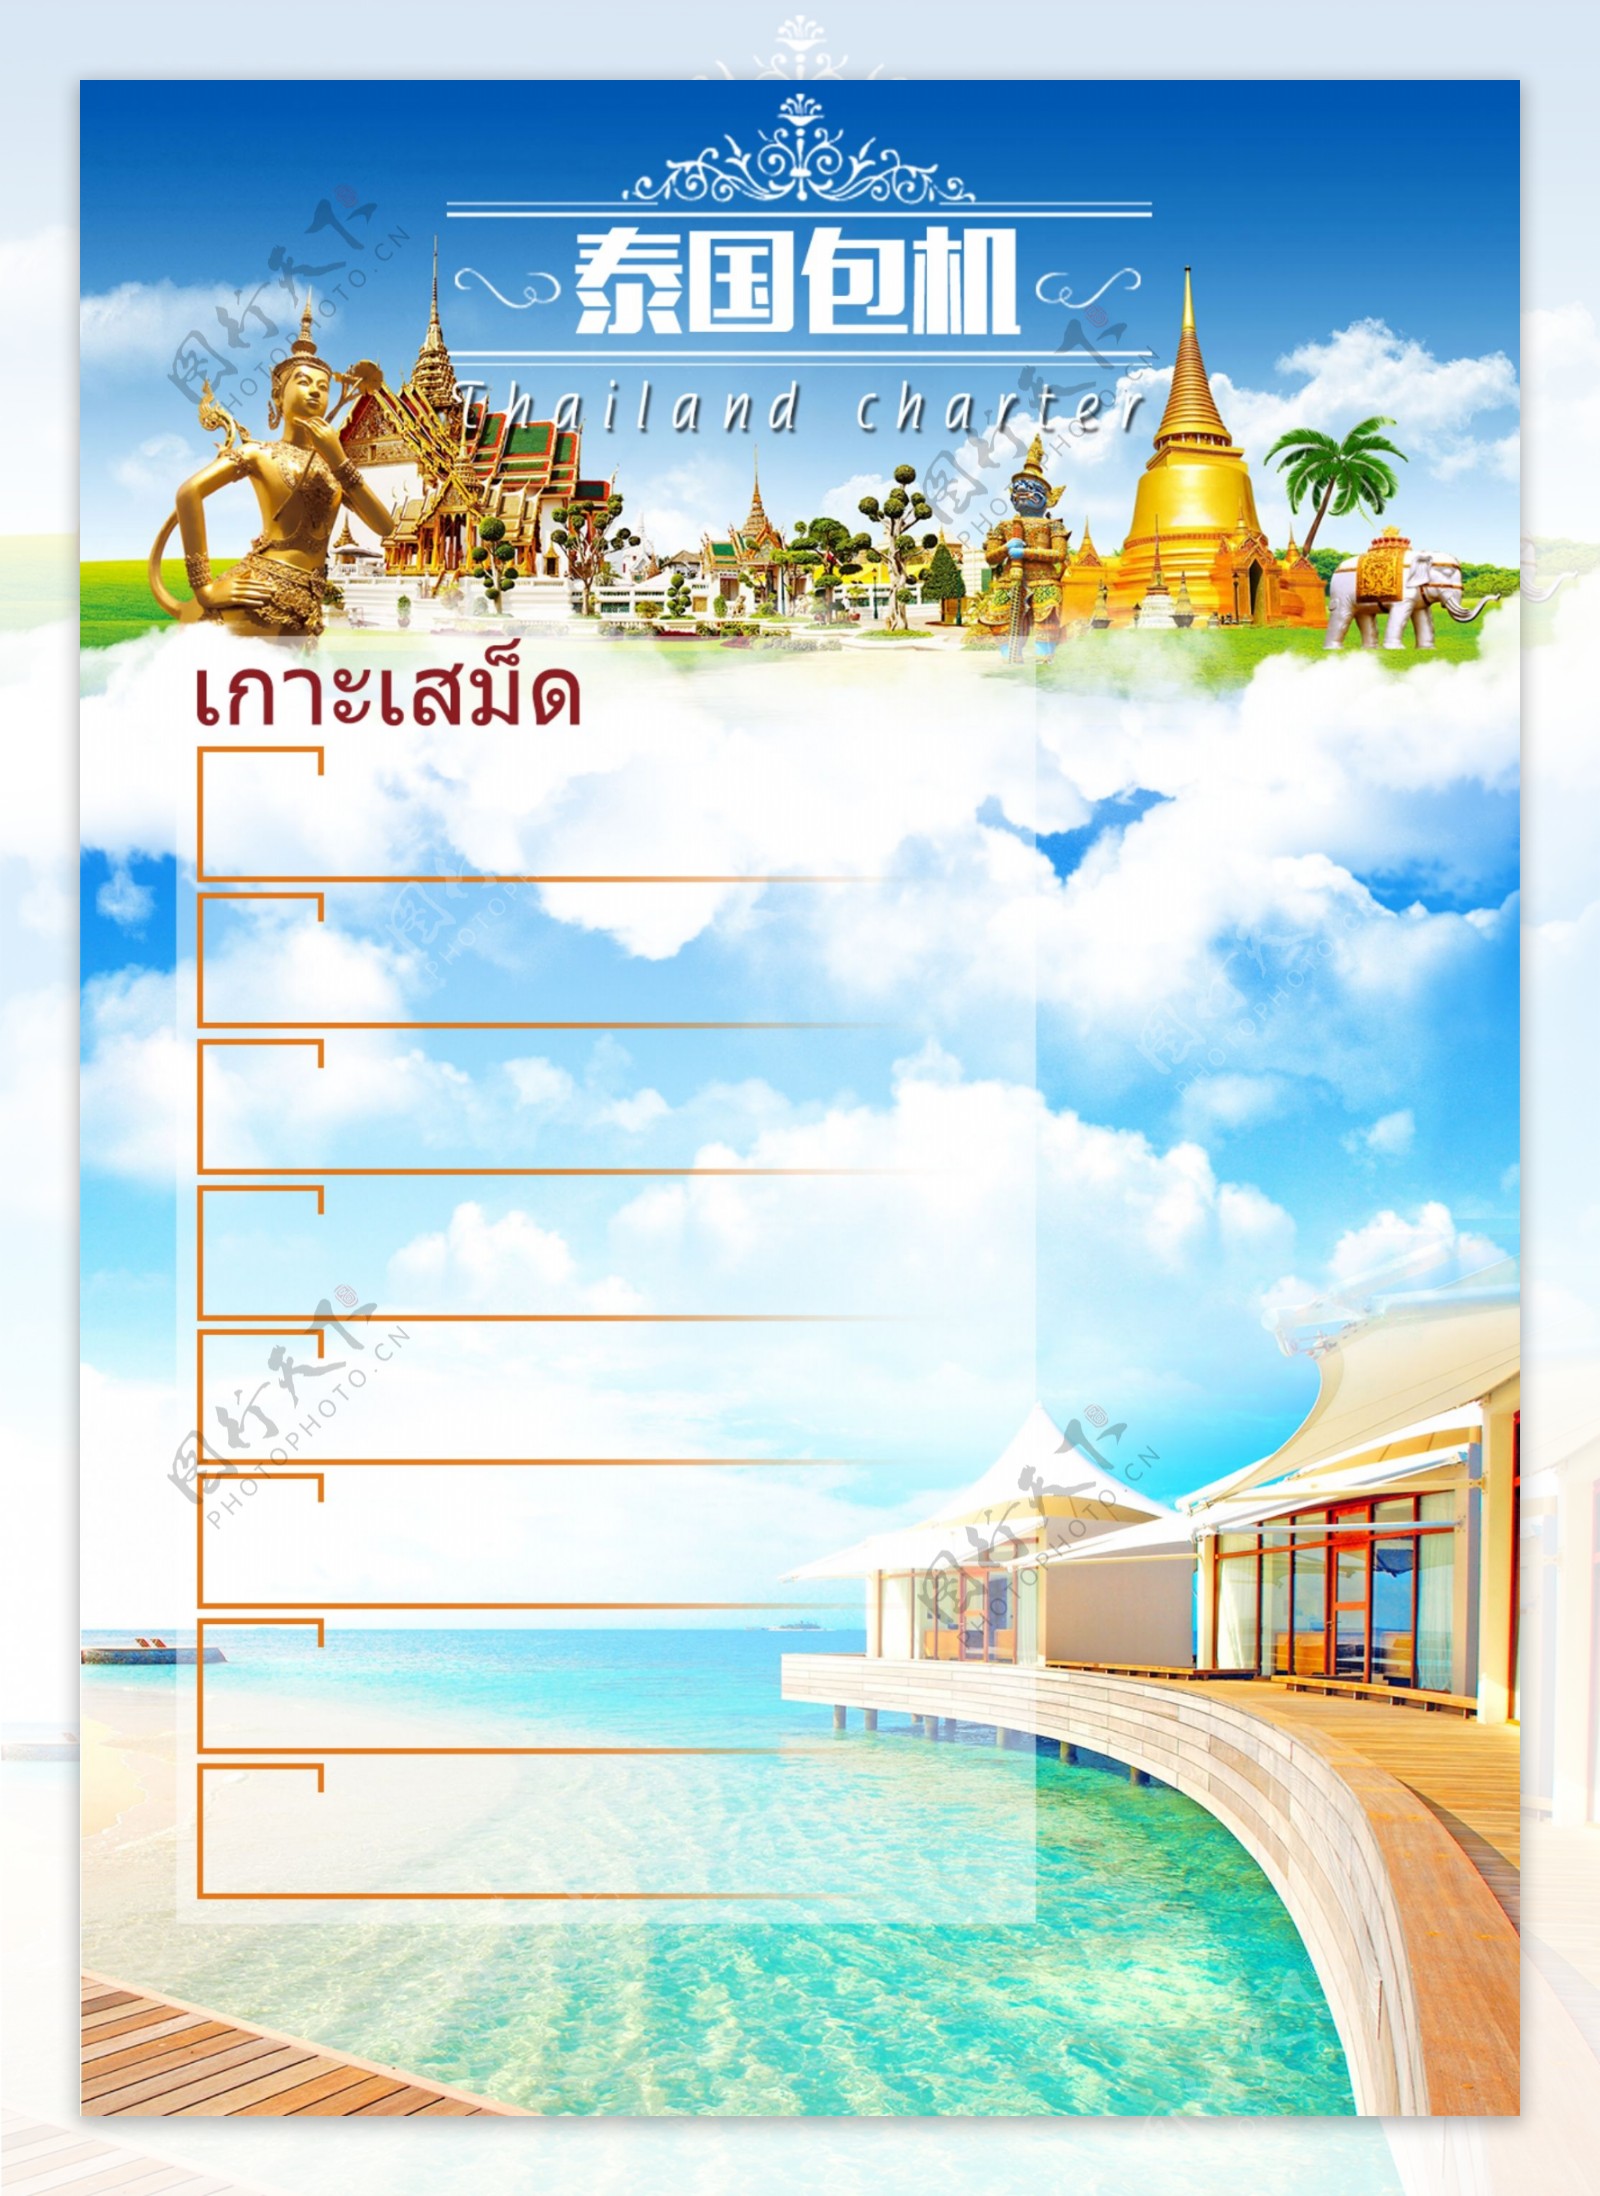 泰国旅游产品广告图片